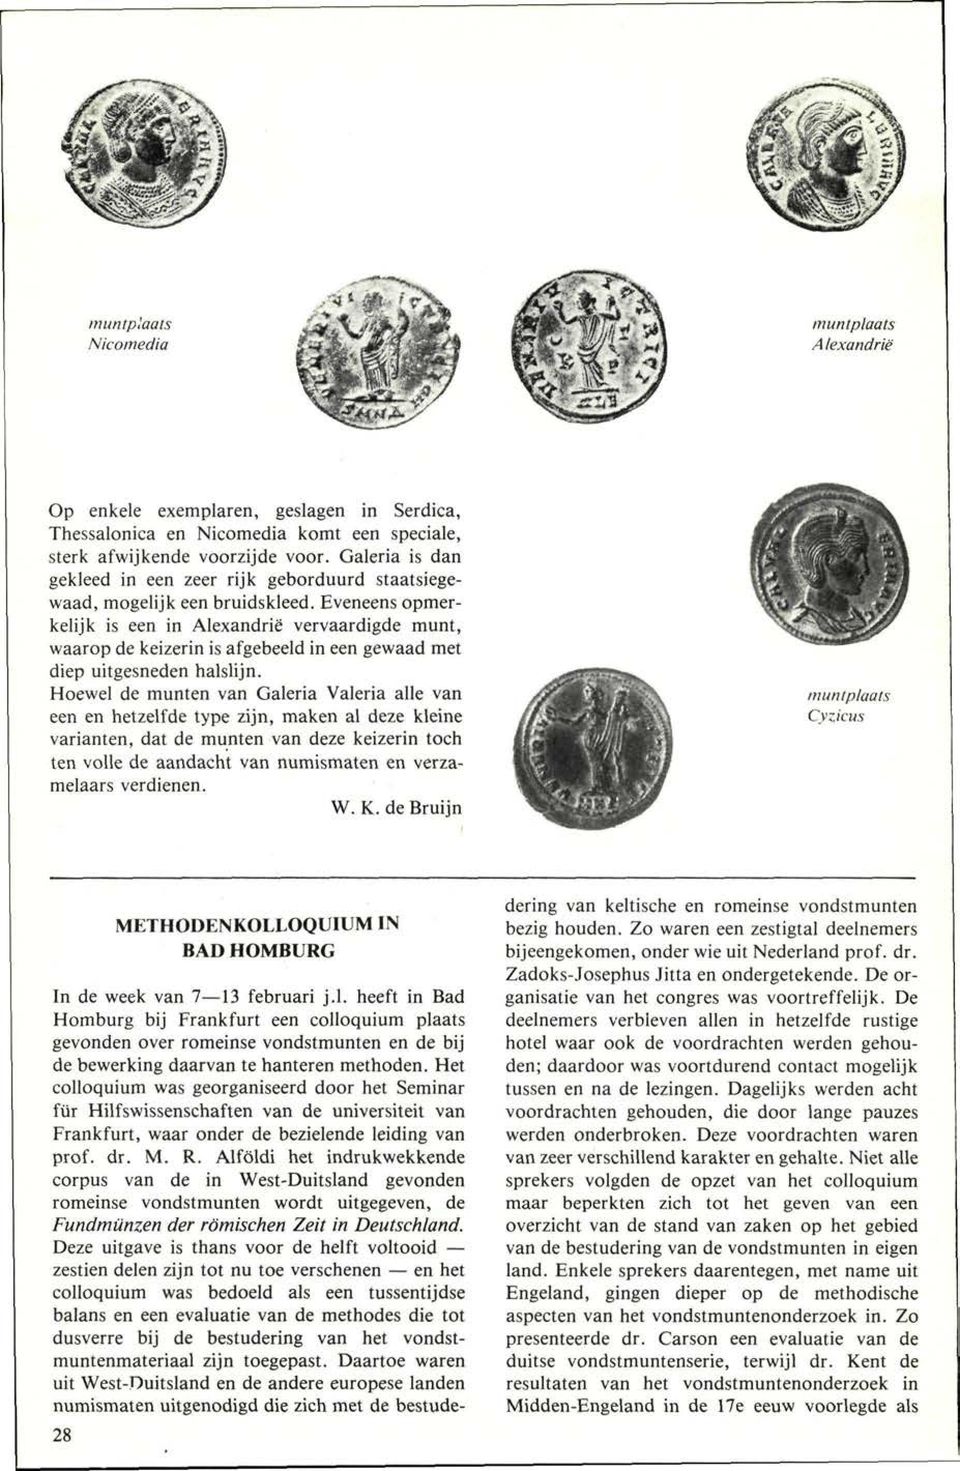 Eveneens opmerkelijk is een in Alexandrië vervaardigde munt, waarop de keizerin is afgebeeld in een gewaad met diep uitgesneden halslijn.